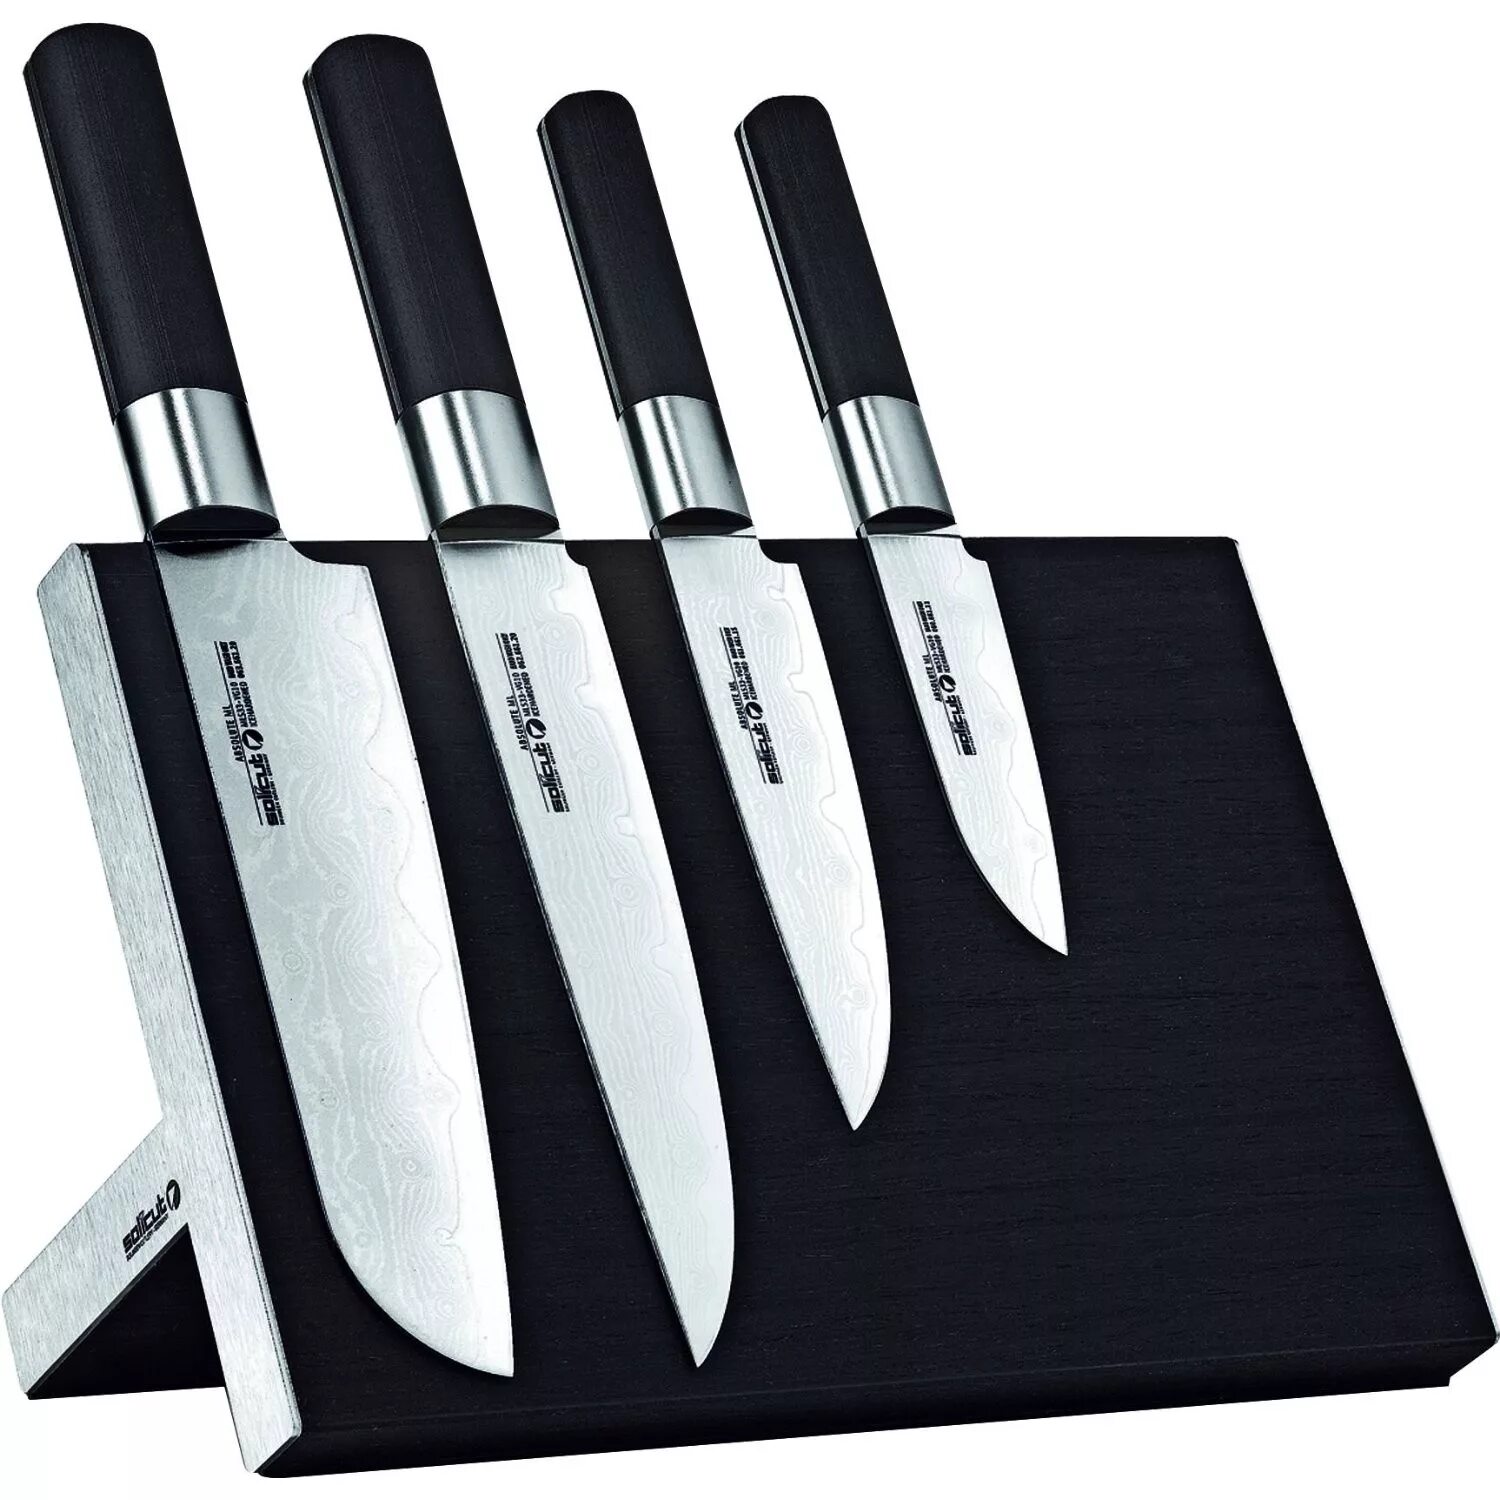 Кухня кухонные ножи. Кухонный нож. Набор ножей для кухни. Дизайнерские кухонные ножи. Нажми куханые.